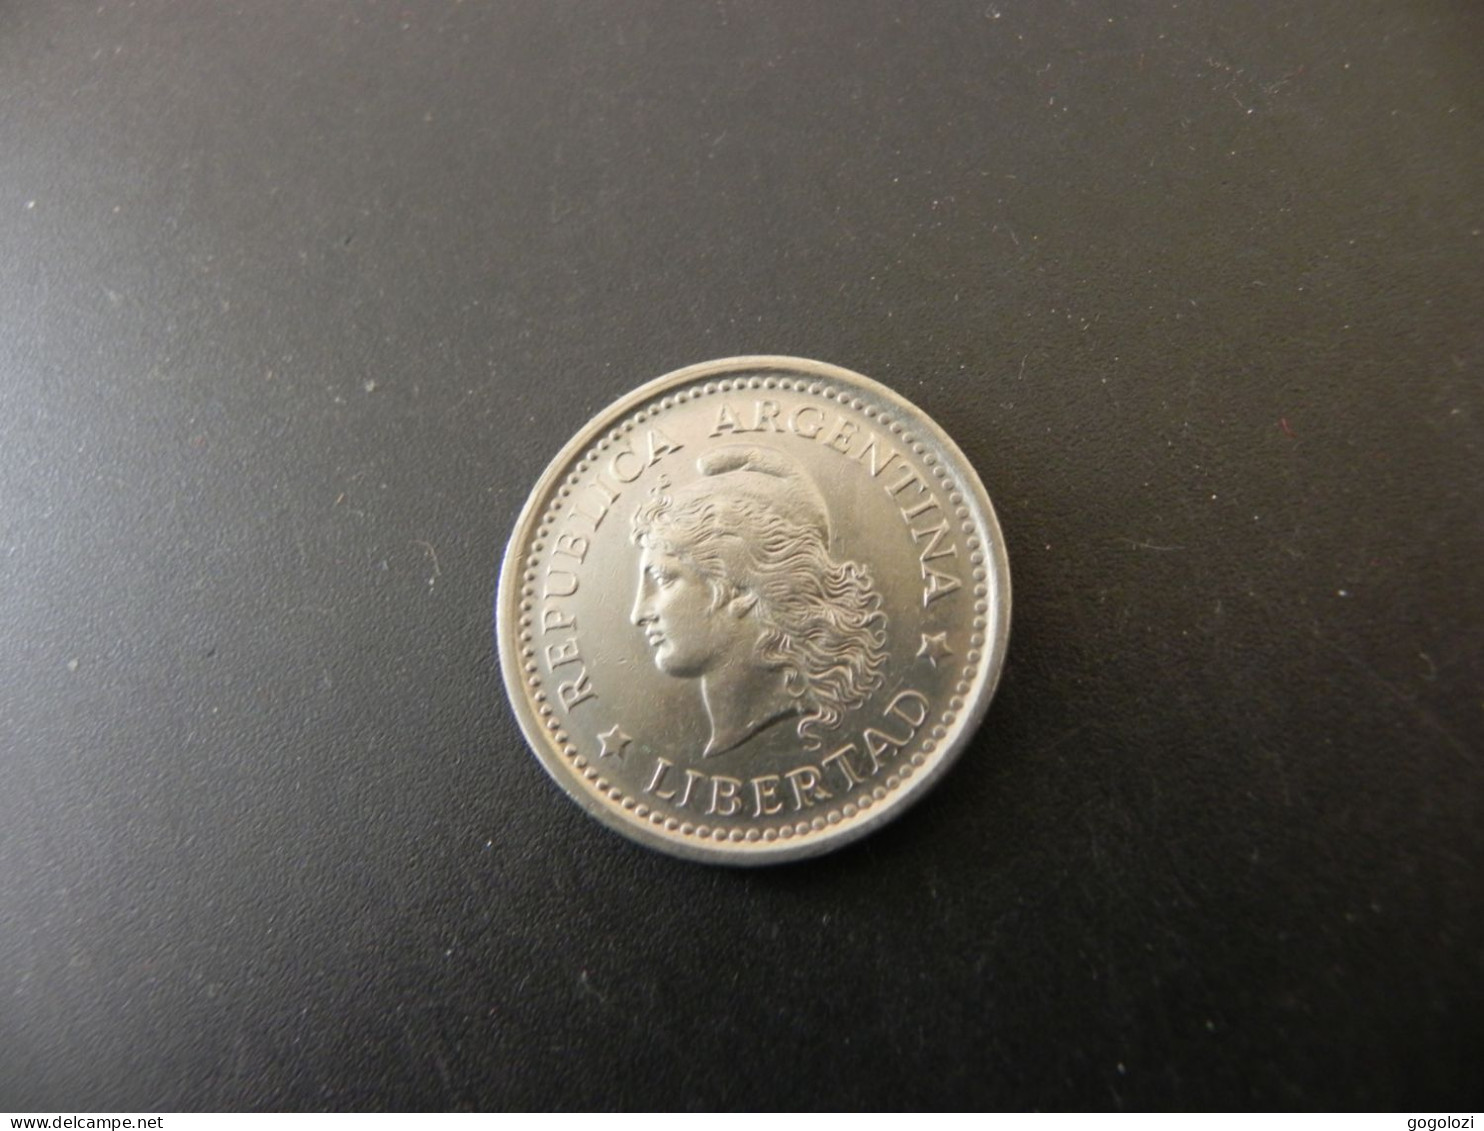 Argentina 1 Peso 1958 - Argentina